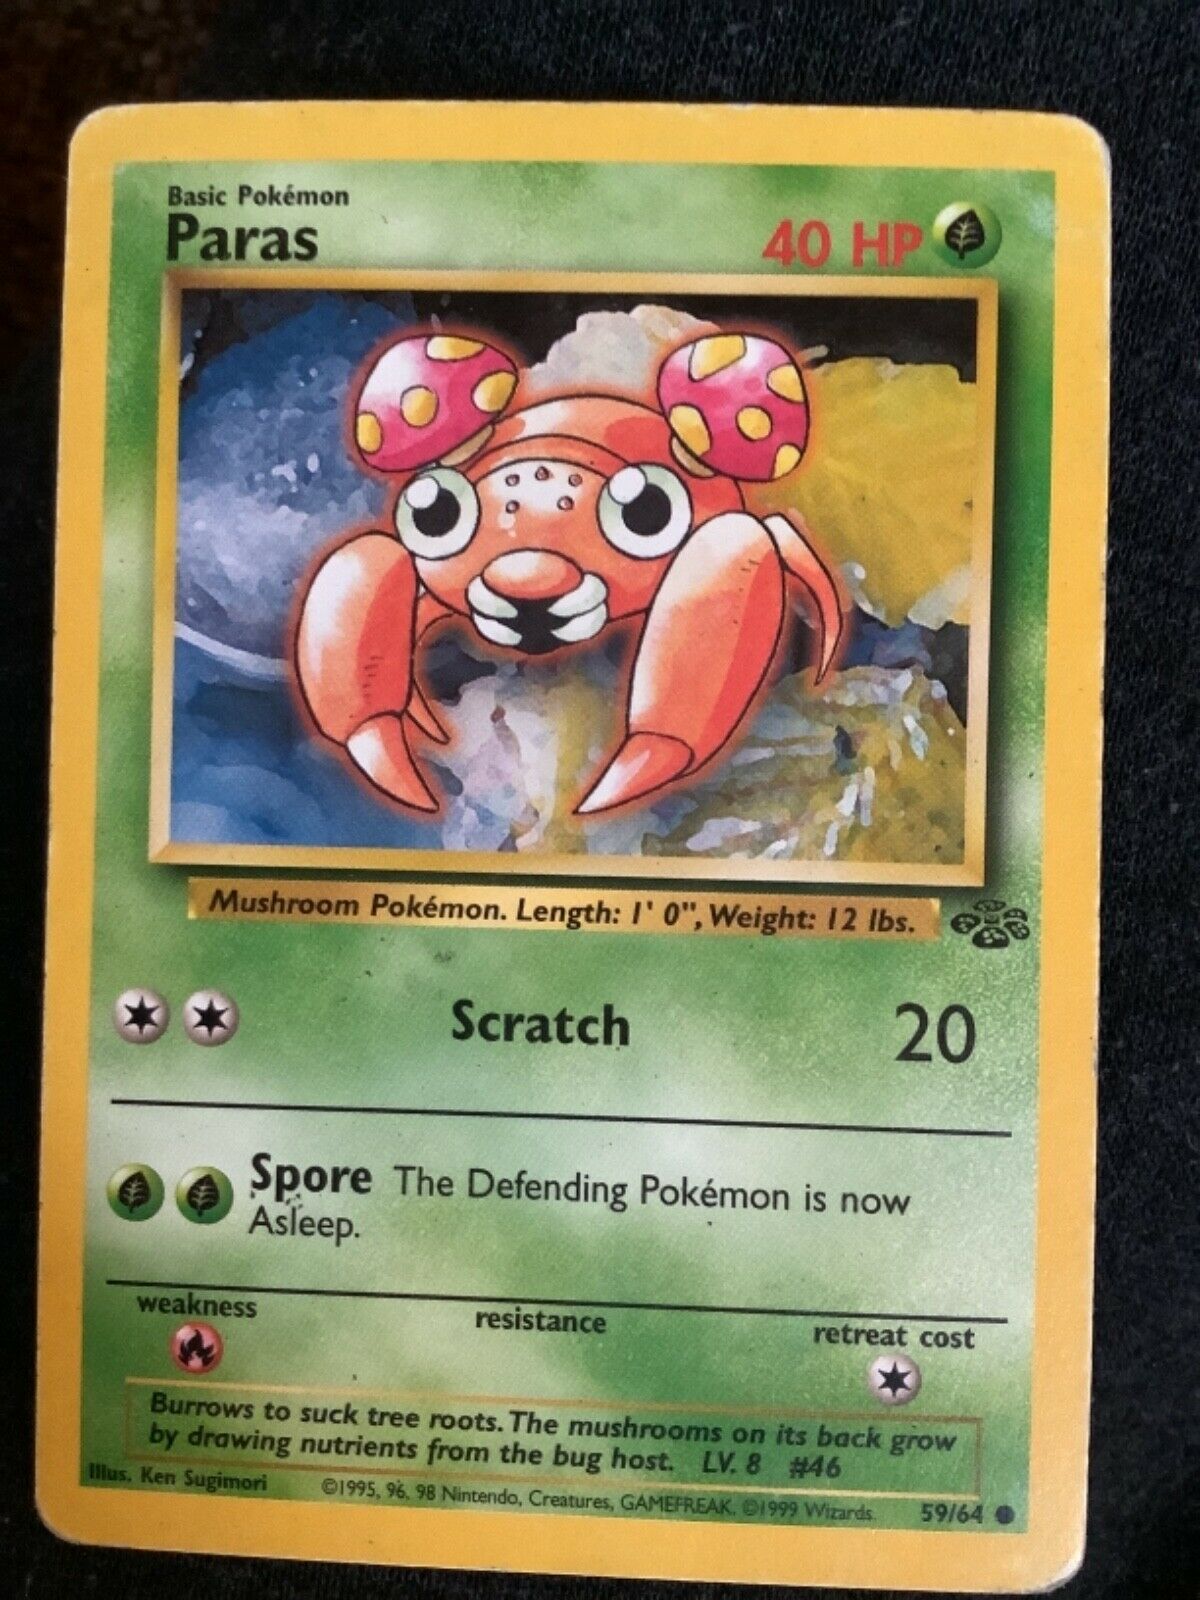 ULTRA RARE Paras Pokémon Card, 1995 96 98, 59/64 EXCELLENT CONDITION! Basic